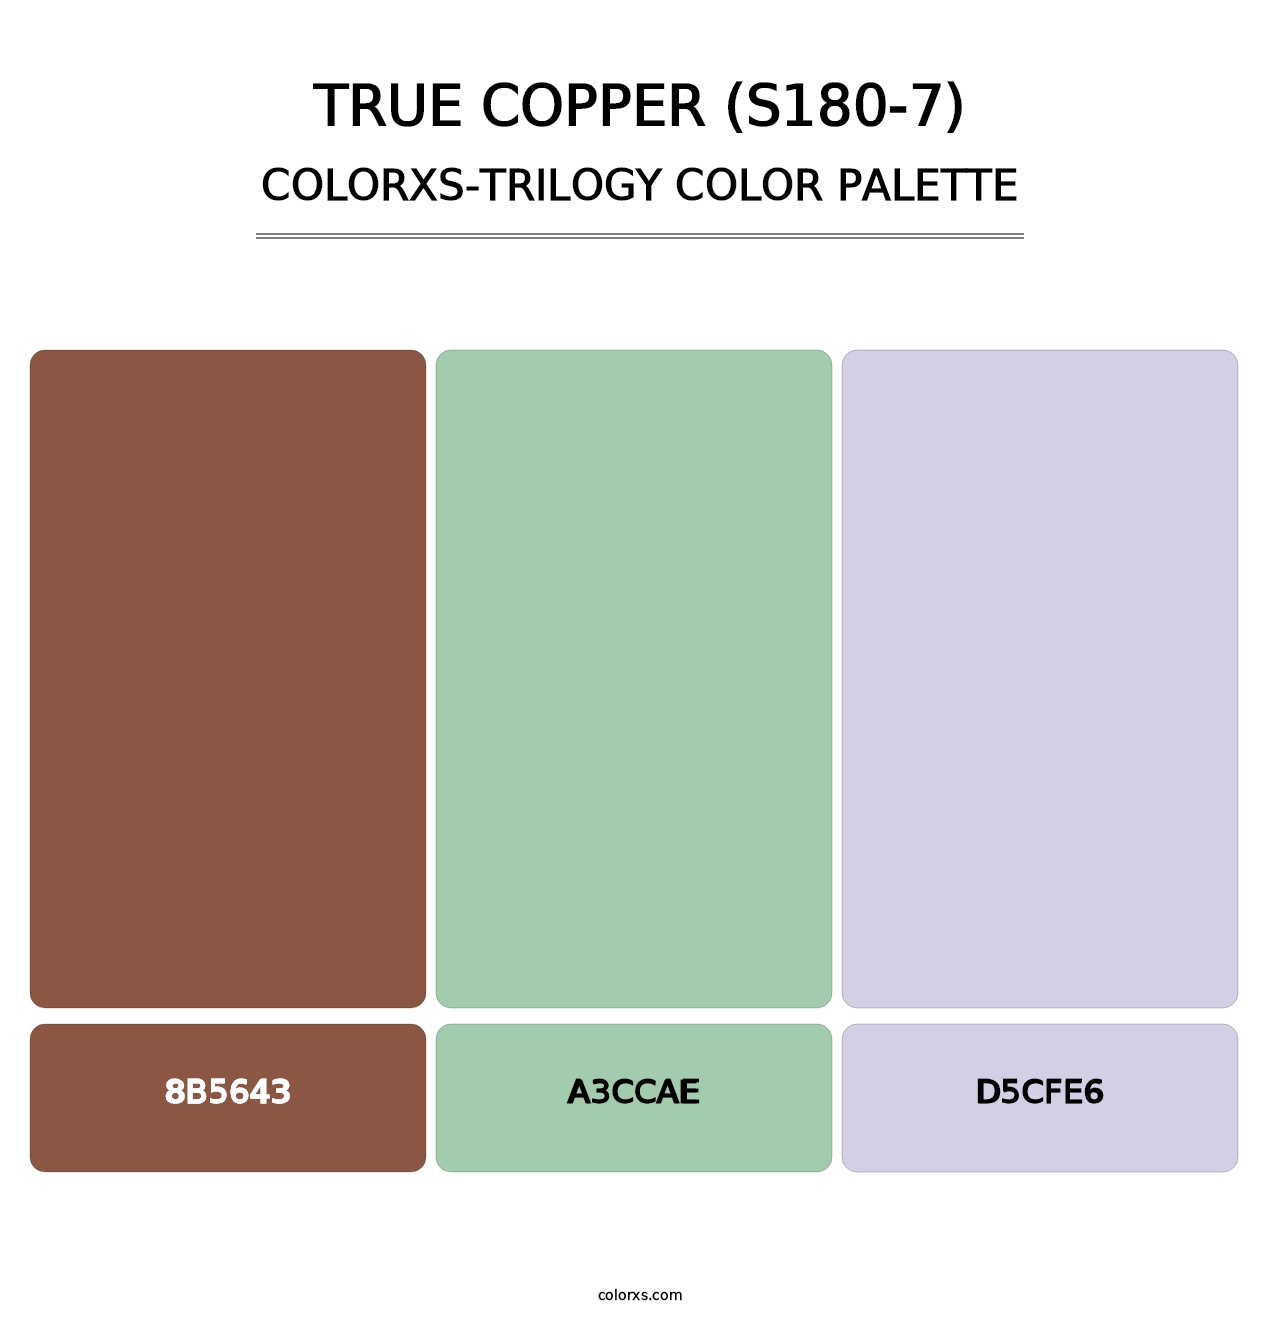 True Copper (S180-7) - Colorxs Trilogy Palette